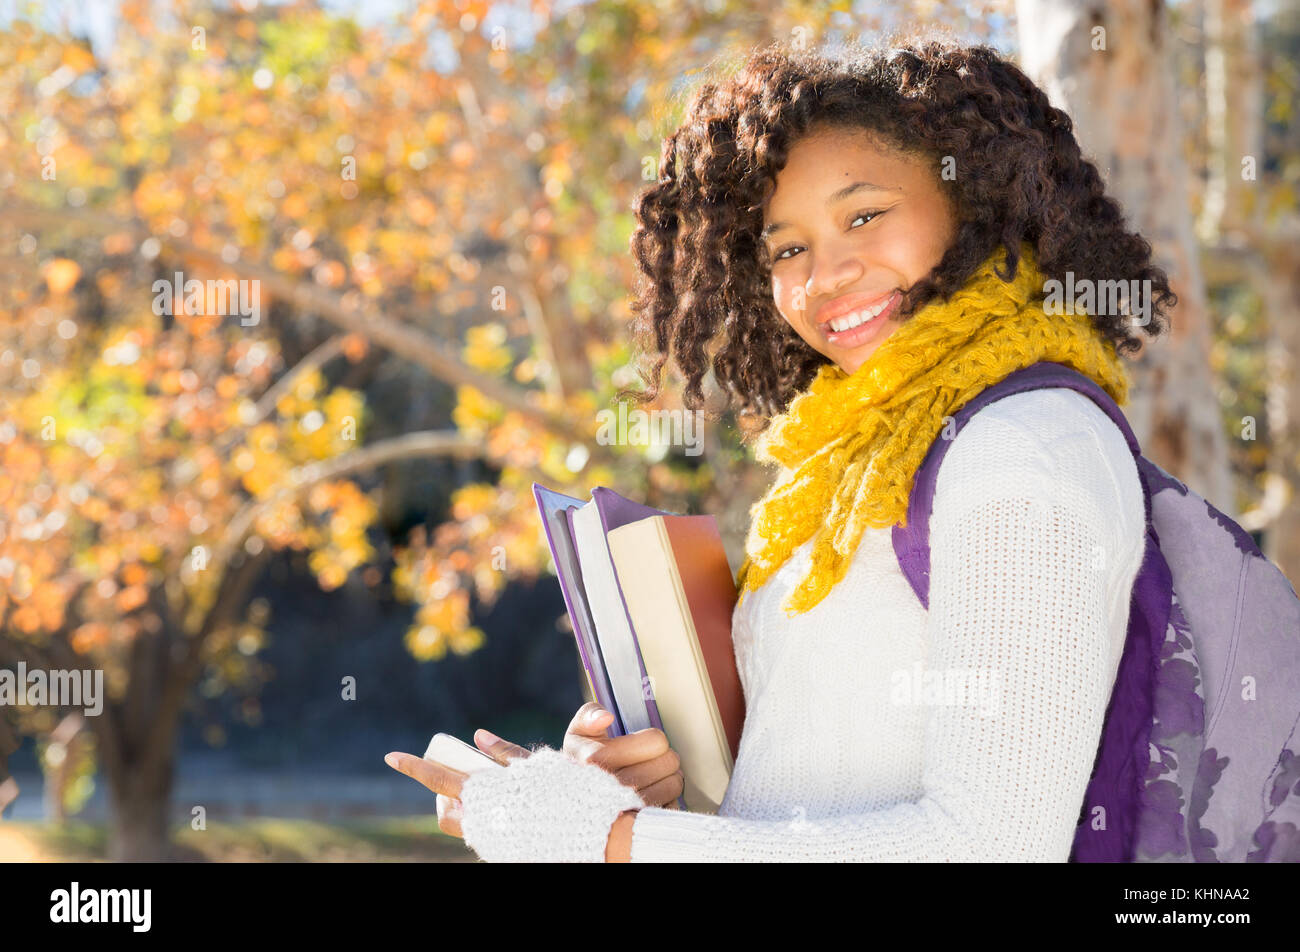 L'Afrique Noire attrayant étudiant américain à l'automne avec Phone holding books while smiling at camera. Prix pour copier ou texte. Banque D'Images